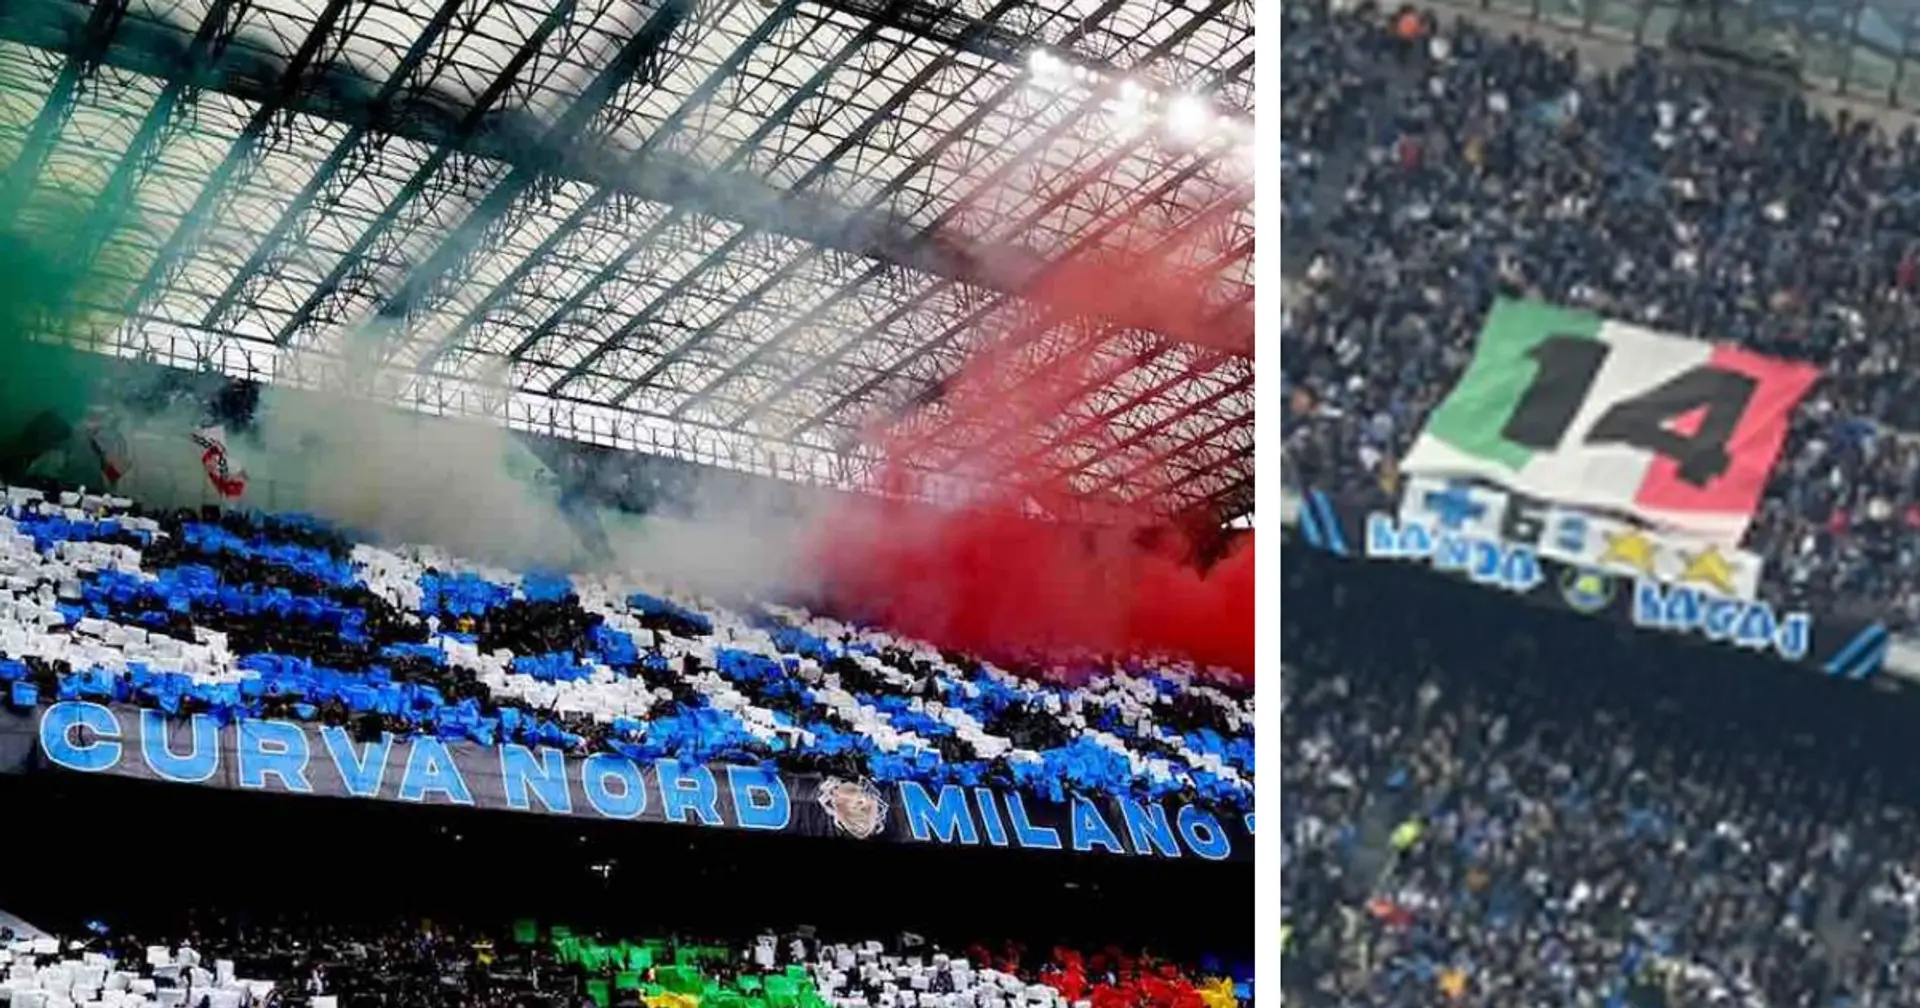 Comincia la festa scudetto a San Siro, gli ultras dell'Inter sfottono la Juve: immagine virale sui social